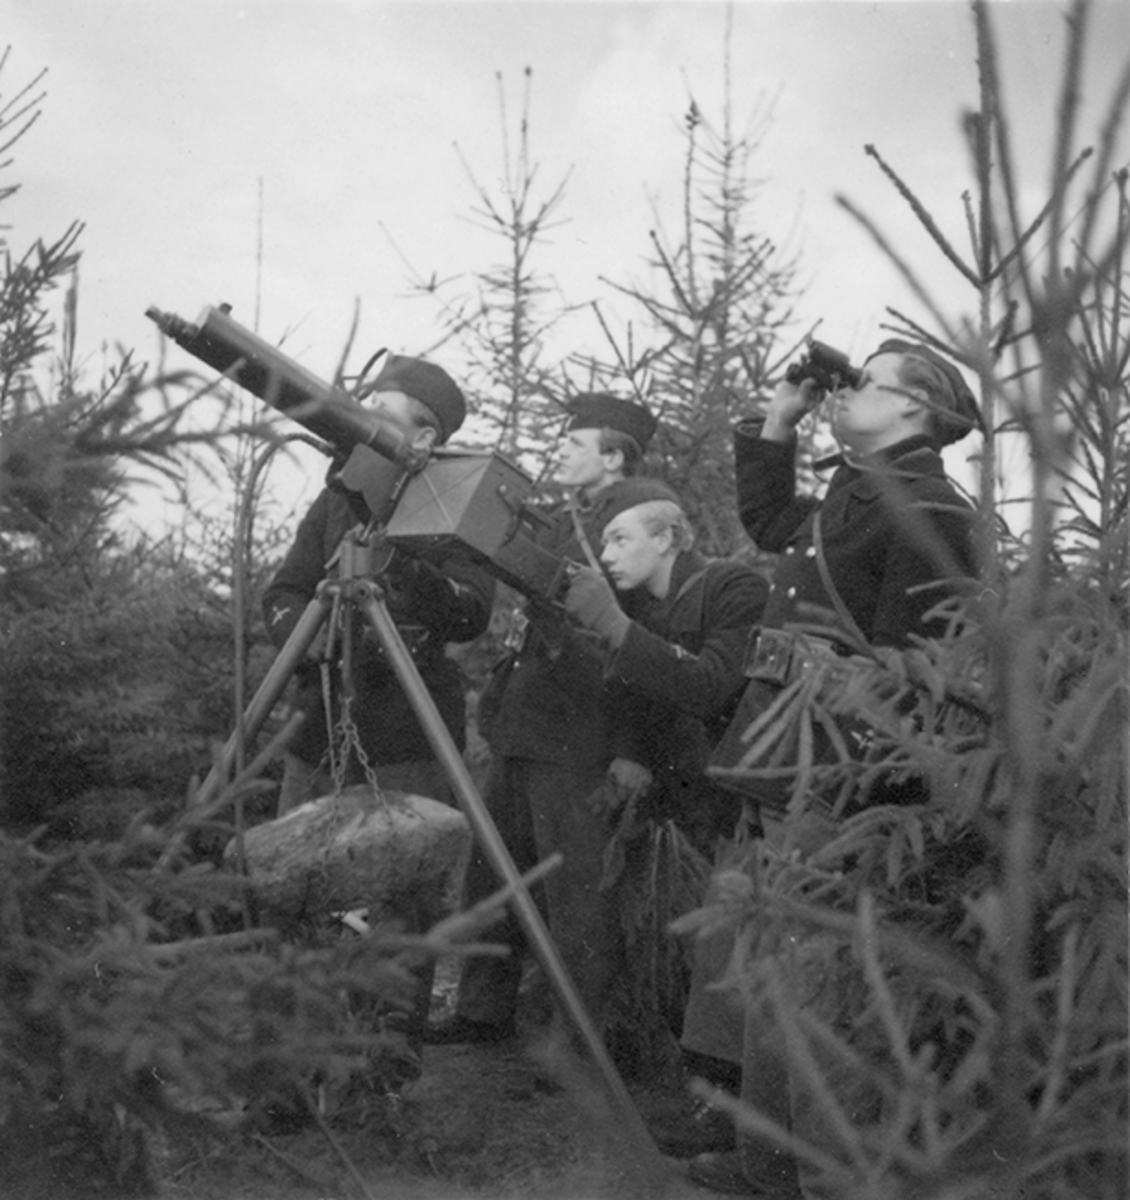 Övning med luftvärnskulspruta i eldställning från granbuskage. Fyra soldater vid kulspruta under 'Skånemanövern' 1939.